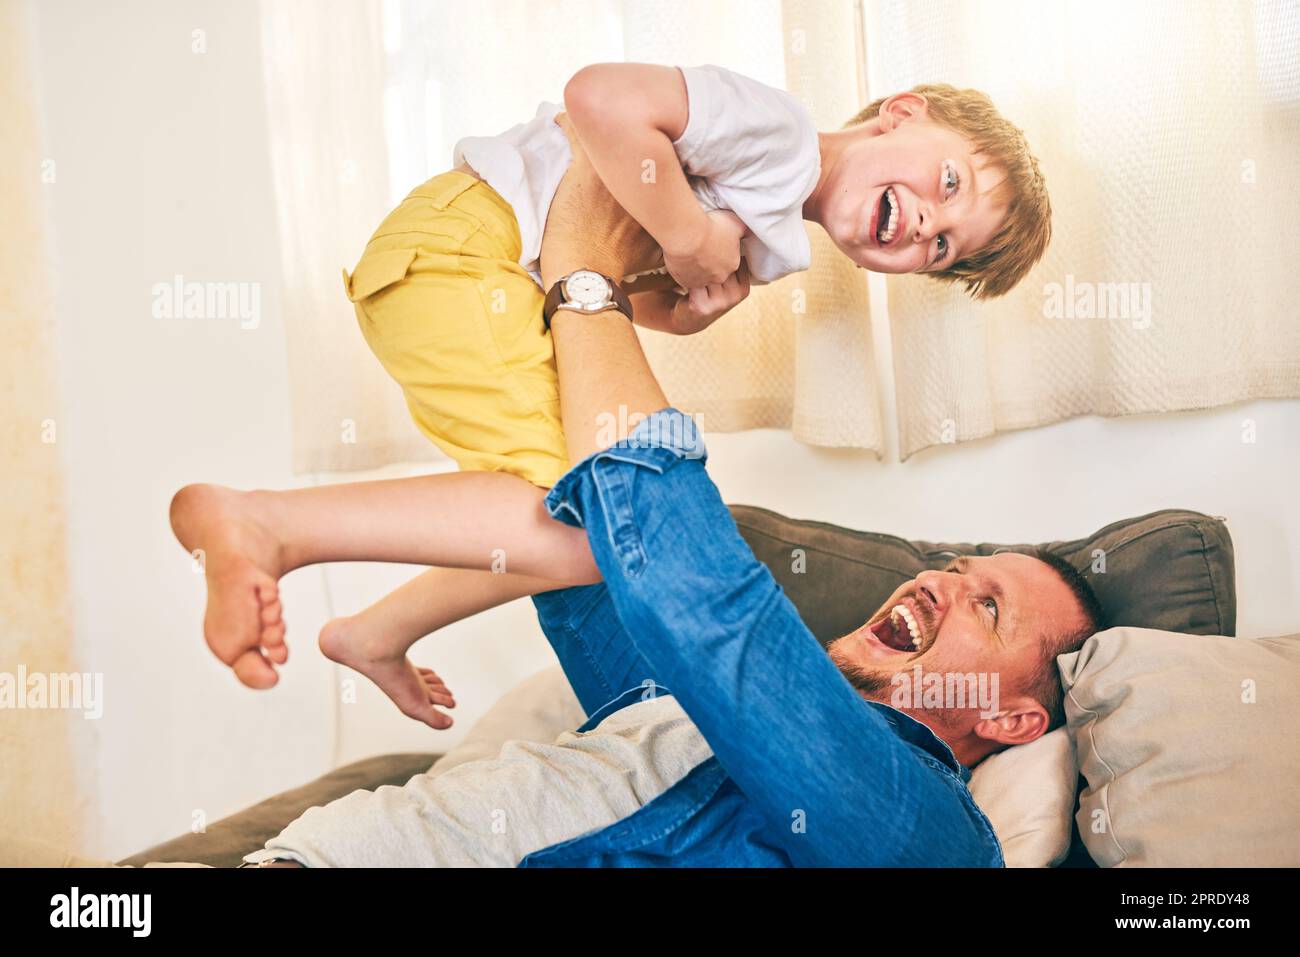 Più che tempo di gioco, il suo tempo di legame. Un ragazzino felice che si diverte con il padre a casa. Foto Stock